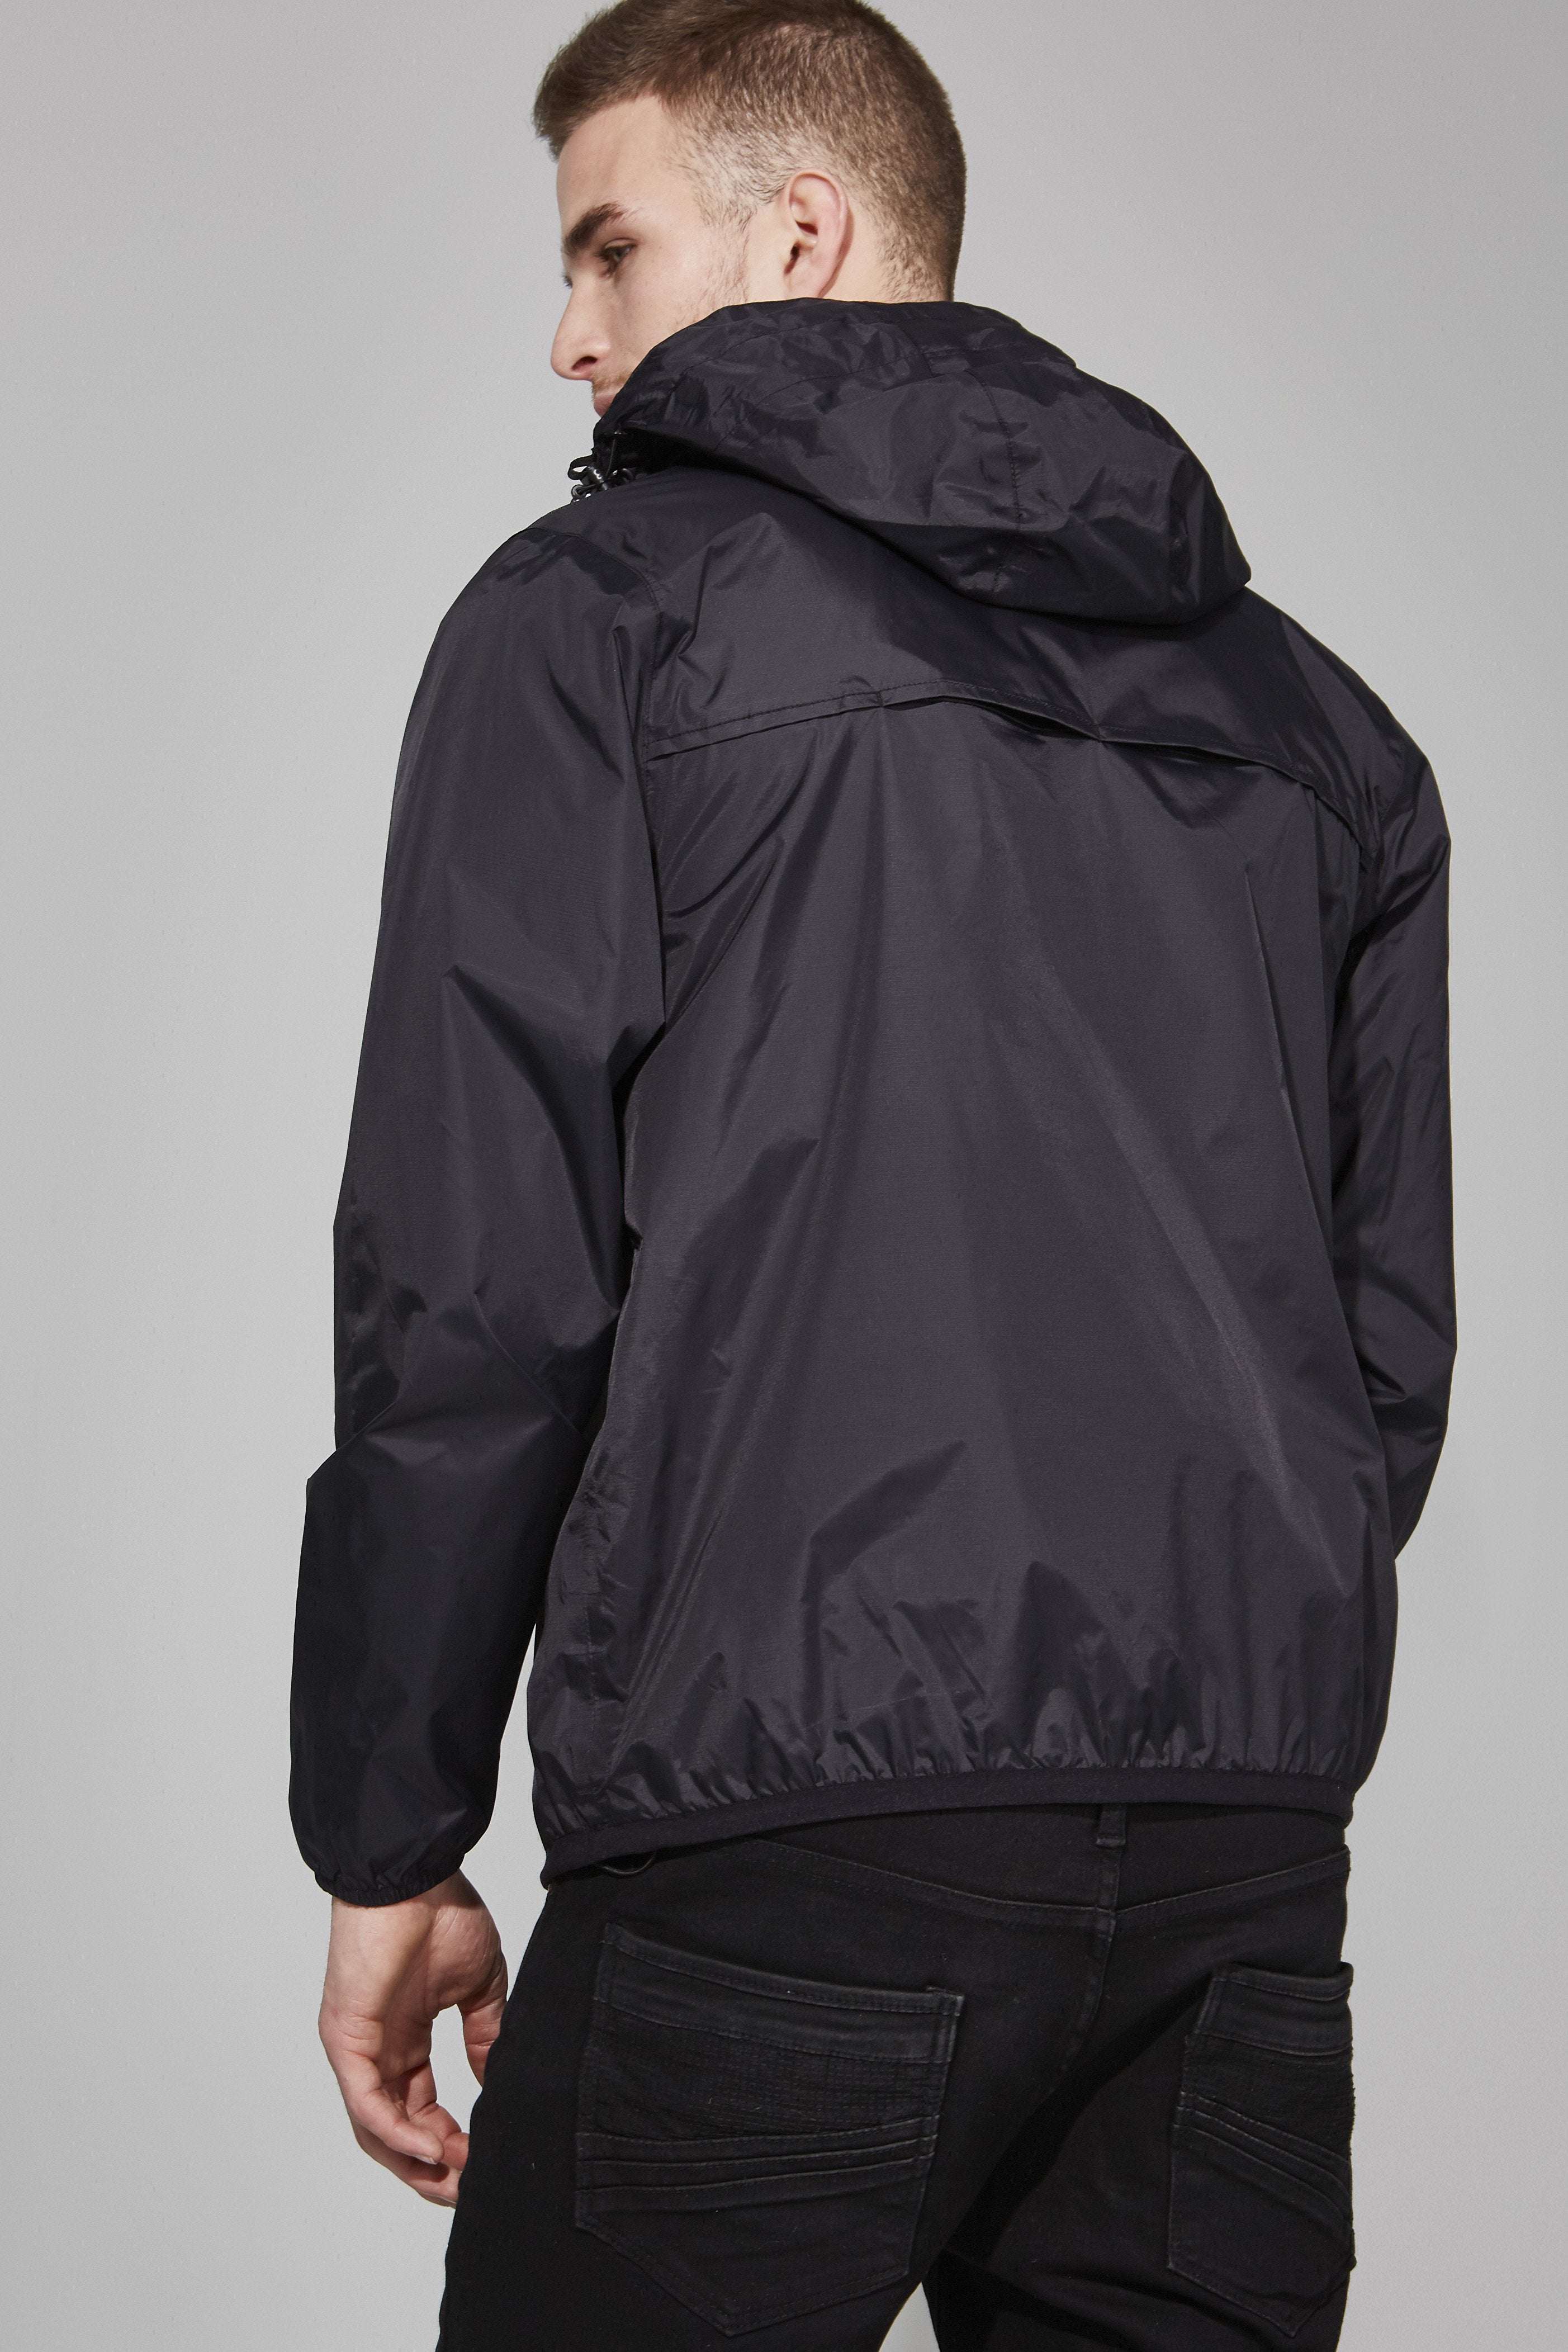 Alex - Black Quarter Zip Packable Light Rain Jacket - O8lifestyle.